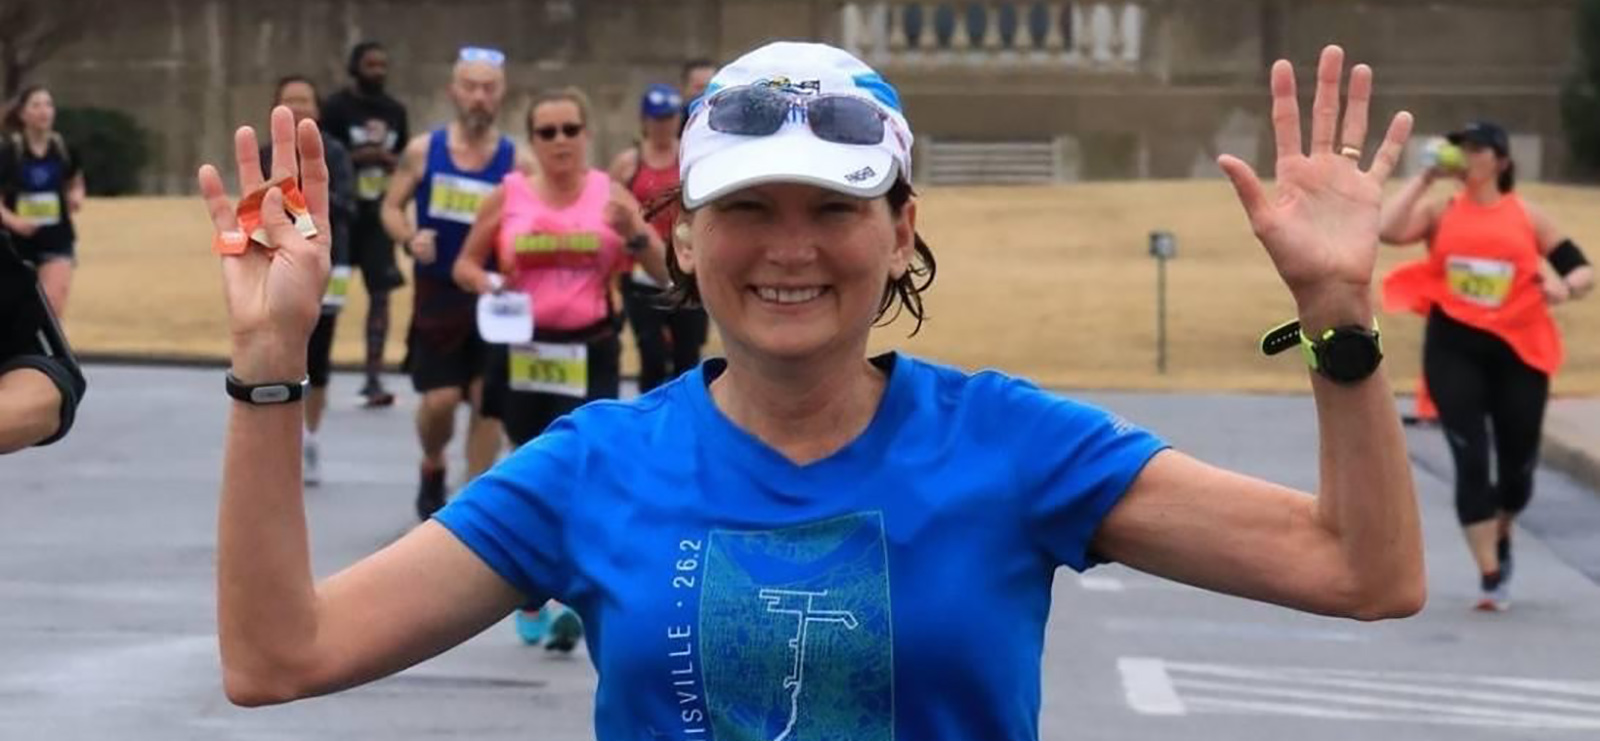 Karen in a marathon in Little Rock